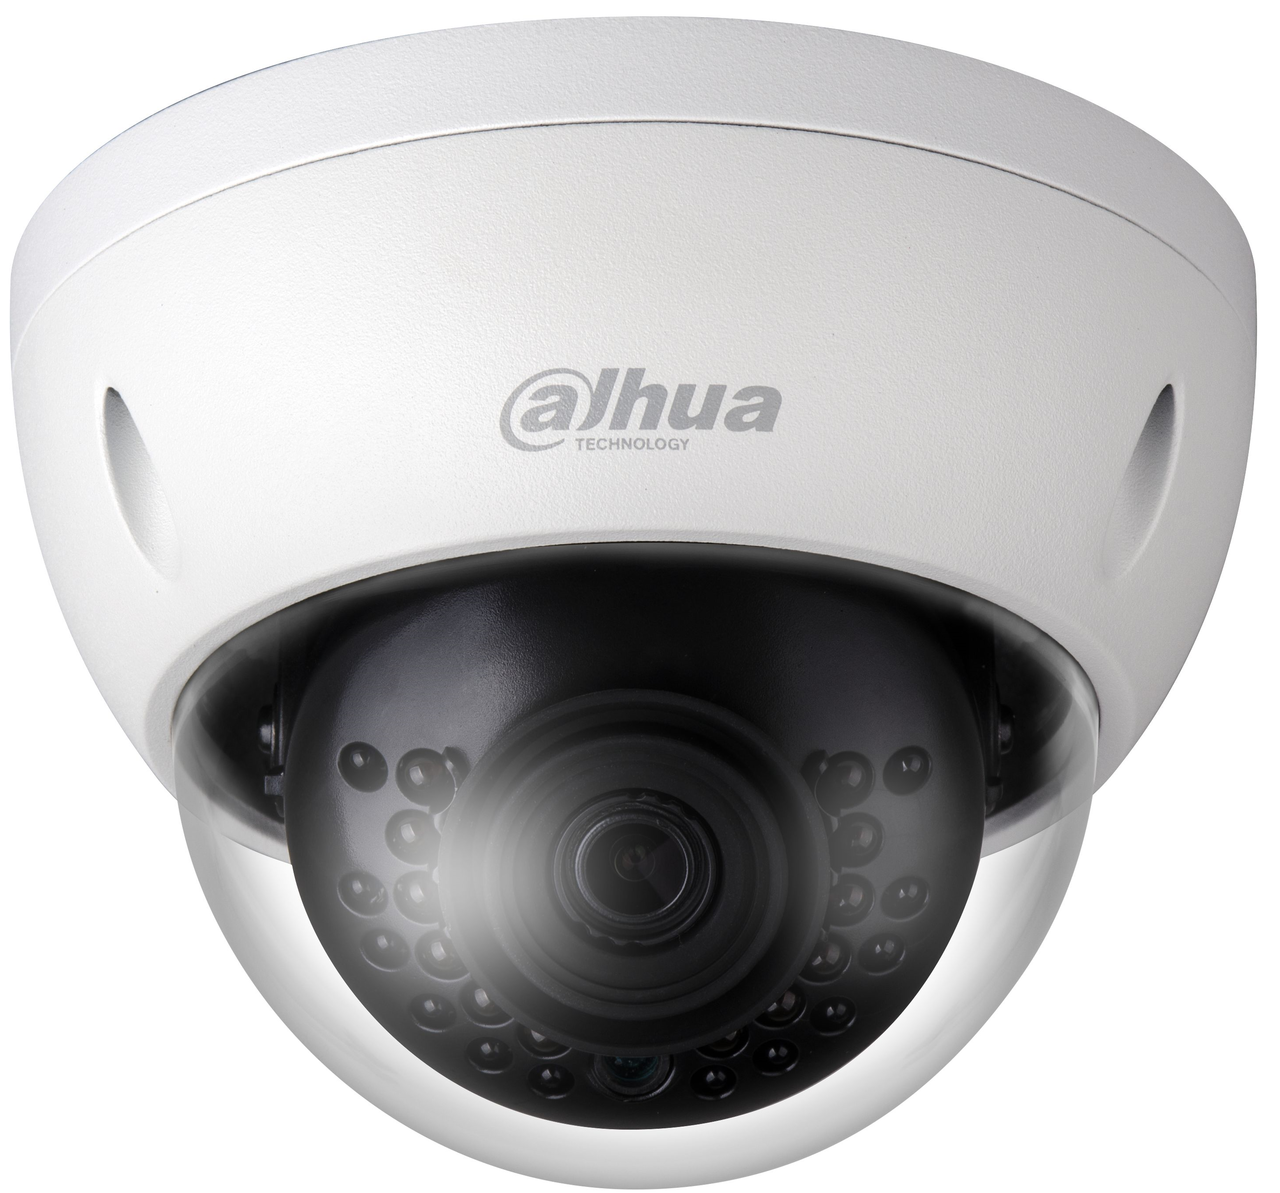 Dahua N51BL23 5MP IR 3.6mm Mini Dome Network Camera